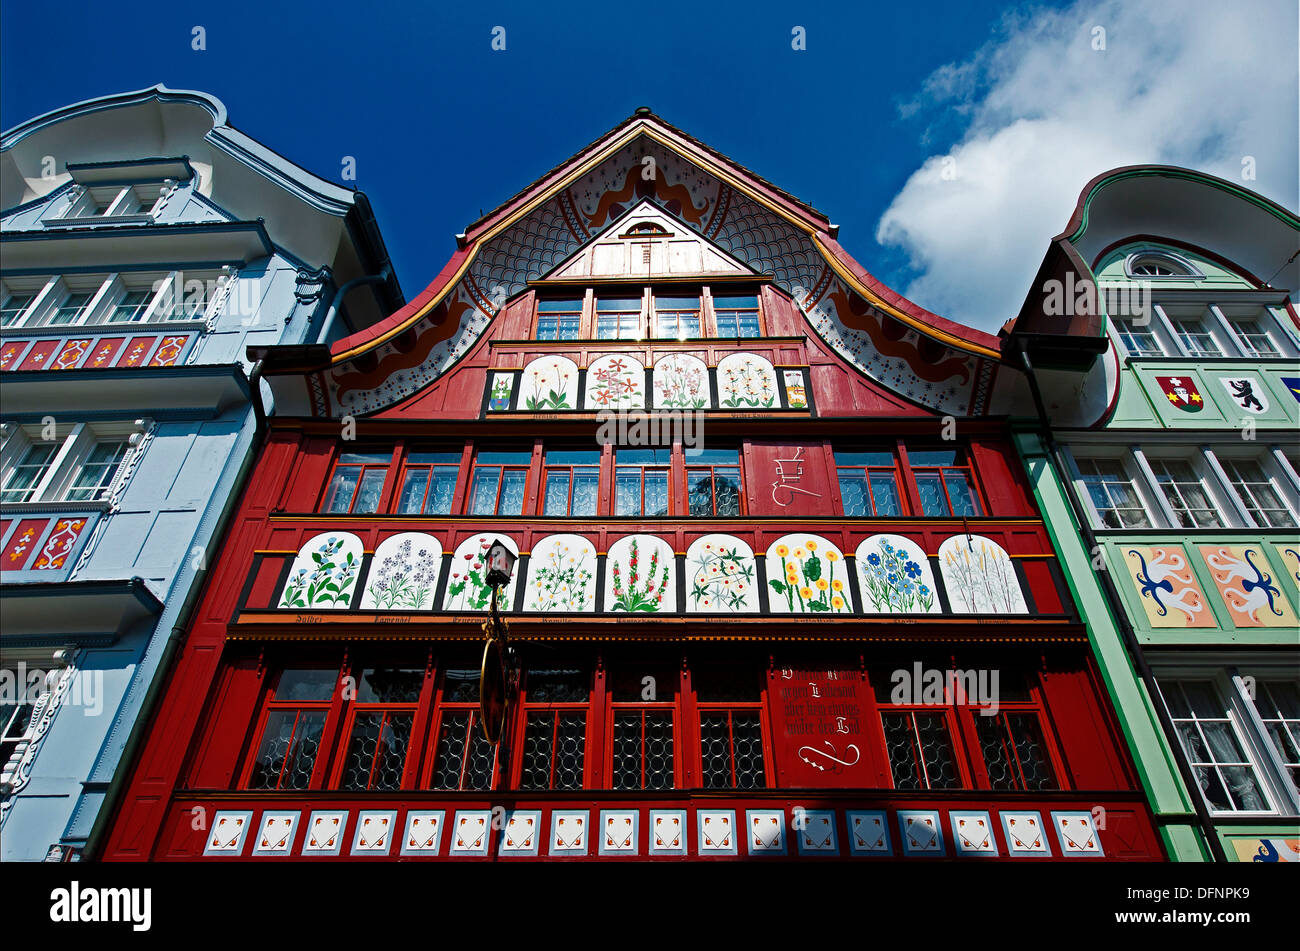 facades in town of Appenzell, Appenzellerland, Switzerland, Europe Stock Photo